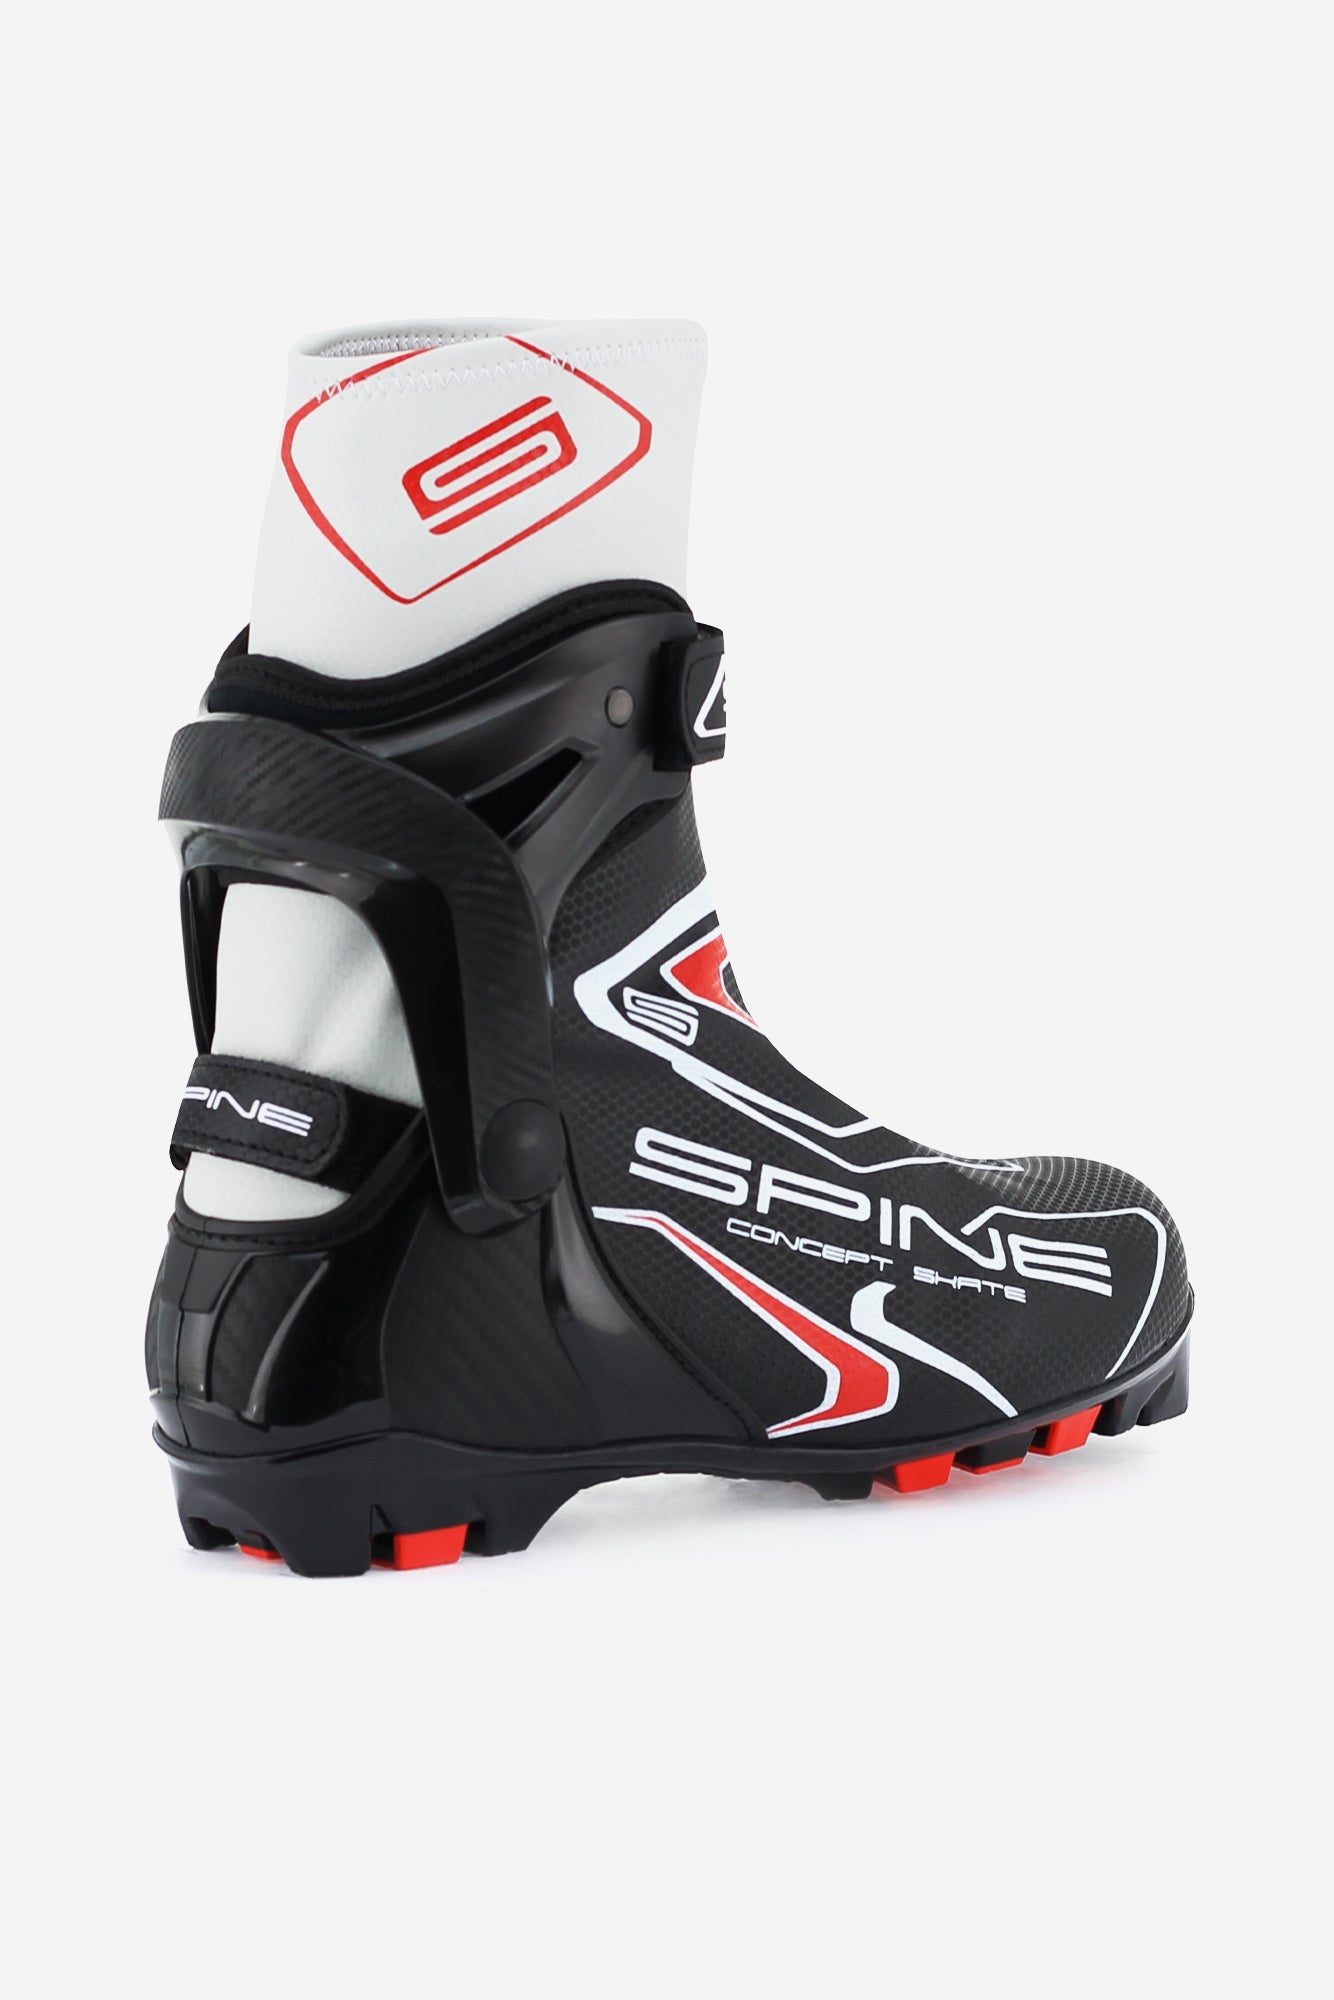 Concept Skate 296 (NNN) Nordic Ski Boots Angle 1